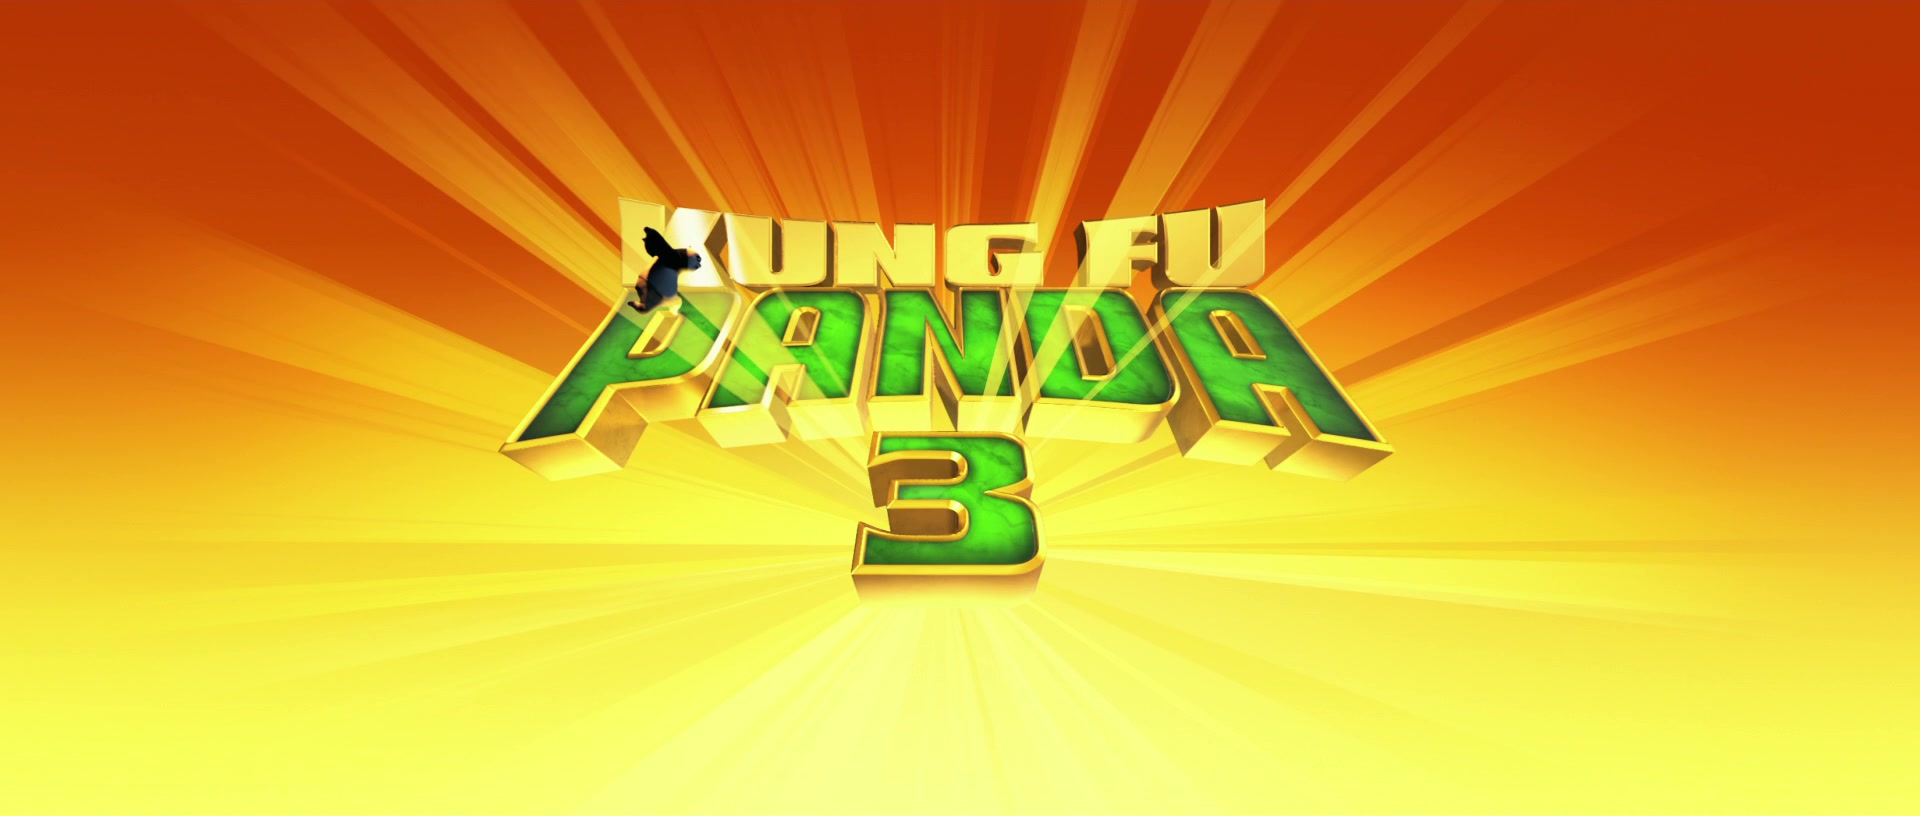 kung fu panda 3 free download in hindi